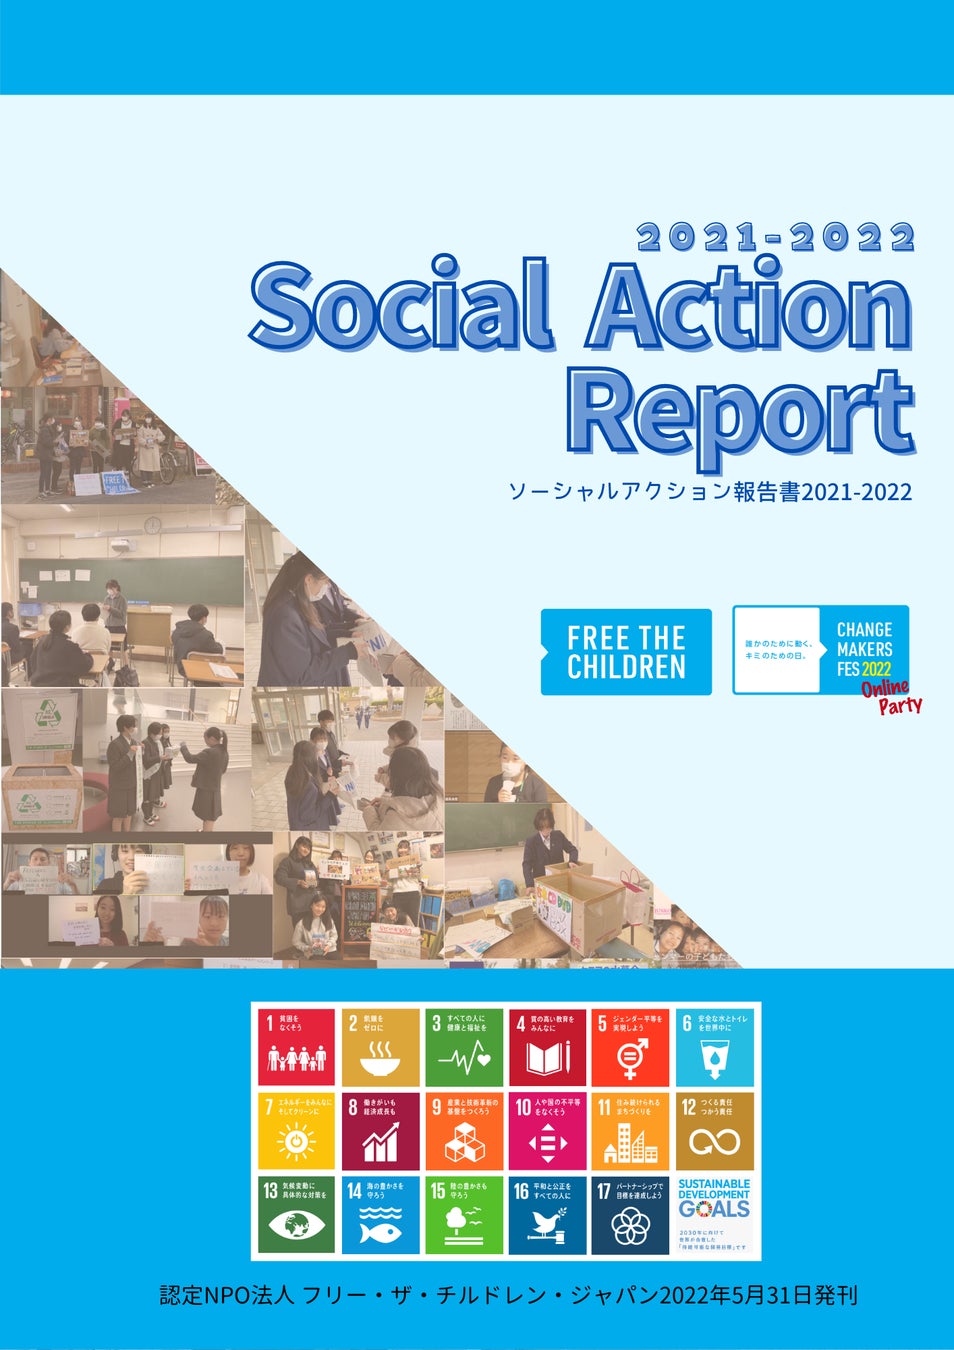 【報告】SDGsに紐づくソーシャルアクション（社会貢献活動）を起こした子ども・若者を応援するイベント「Change Makers Fes 2022」を3/19に開催のサブ画像5_ソーシャルアクションレポート2021-2022表紙 (C)FTCJ